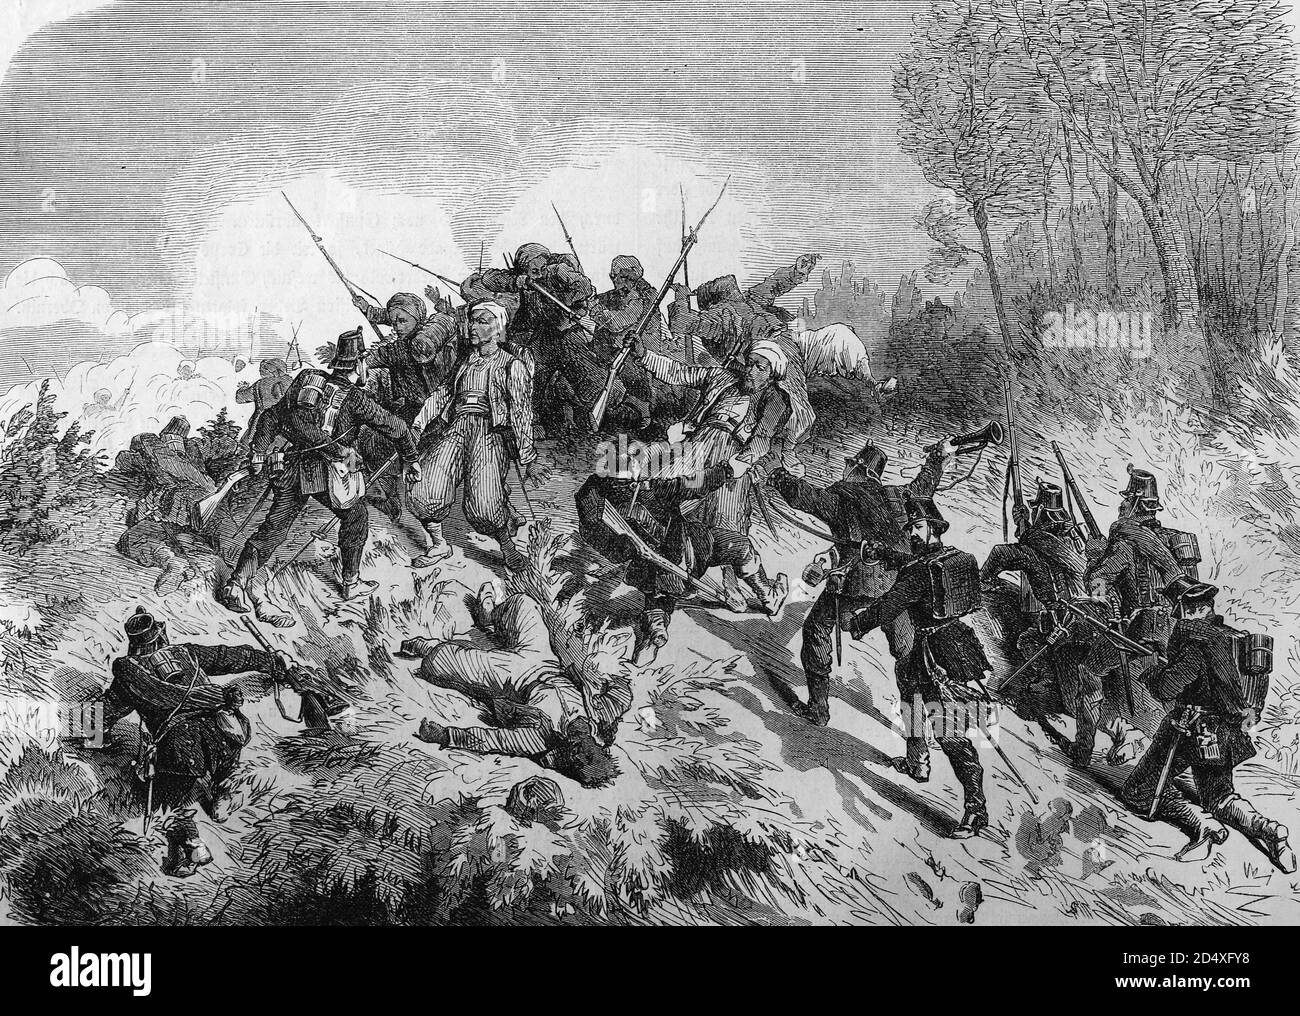 Turros-Fänge von norddeutschen Soldaten bei Wörth, illustrierte Kriegsgeschichte, Deutsch - Französischer Krieg 1870-1871 Stockfoto